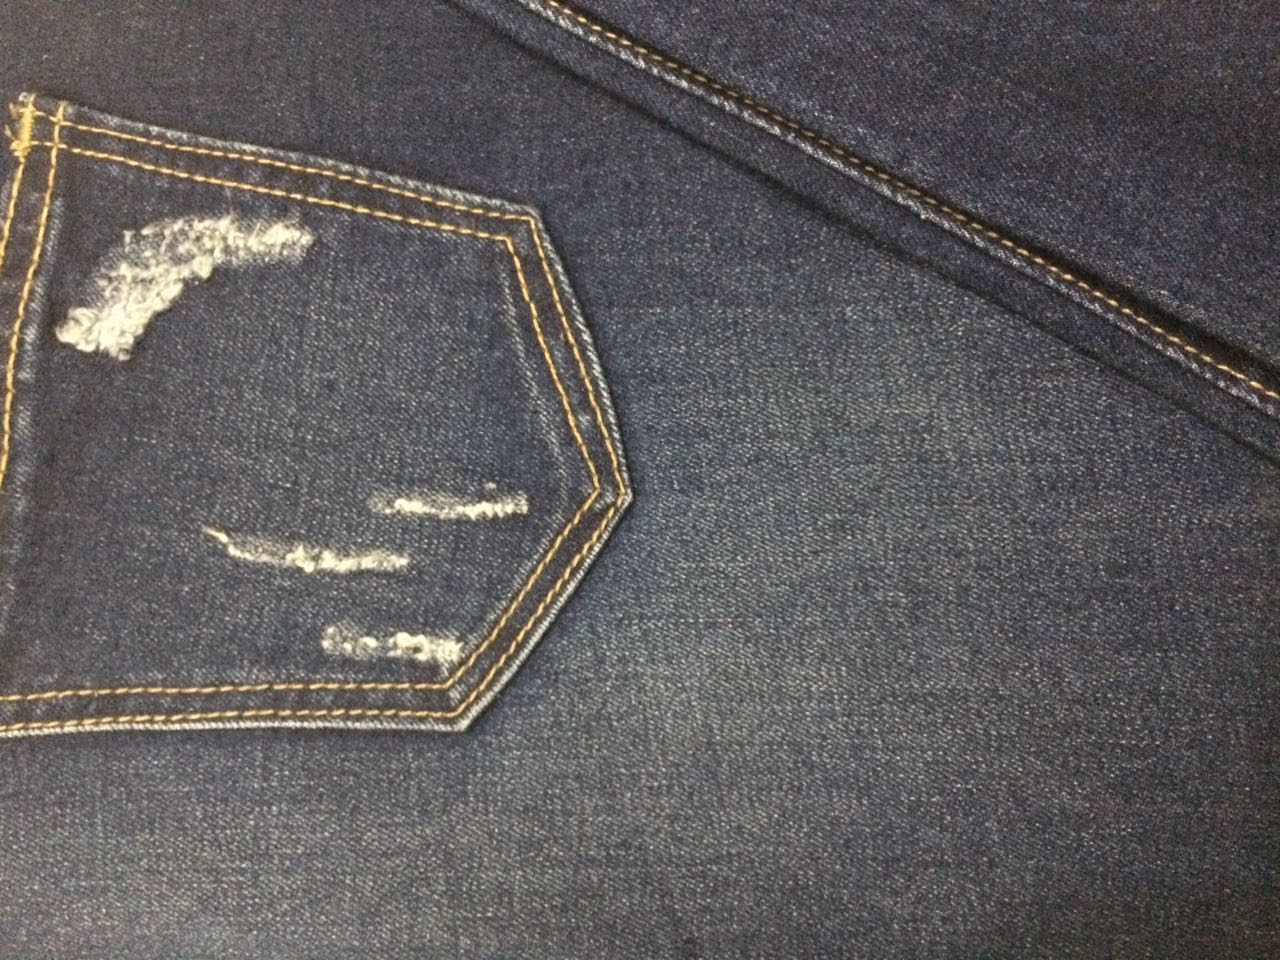 vải jean cotton giá rẻ khổ 1m6 , đa dạng mẫu mã phong phú - 10